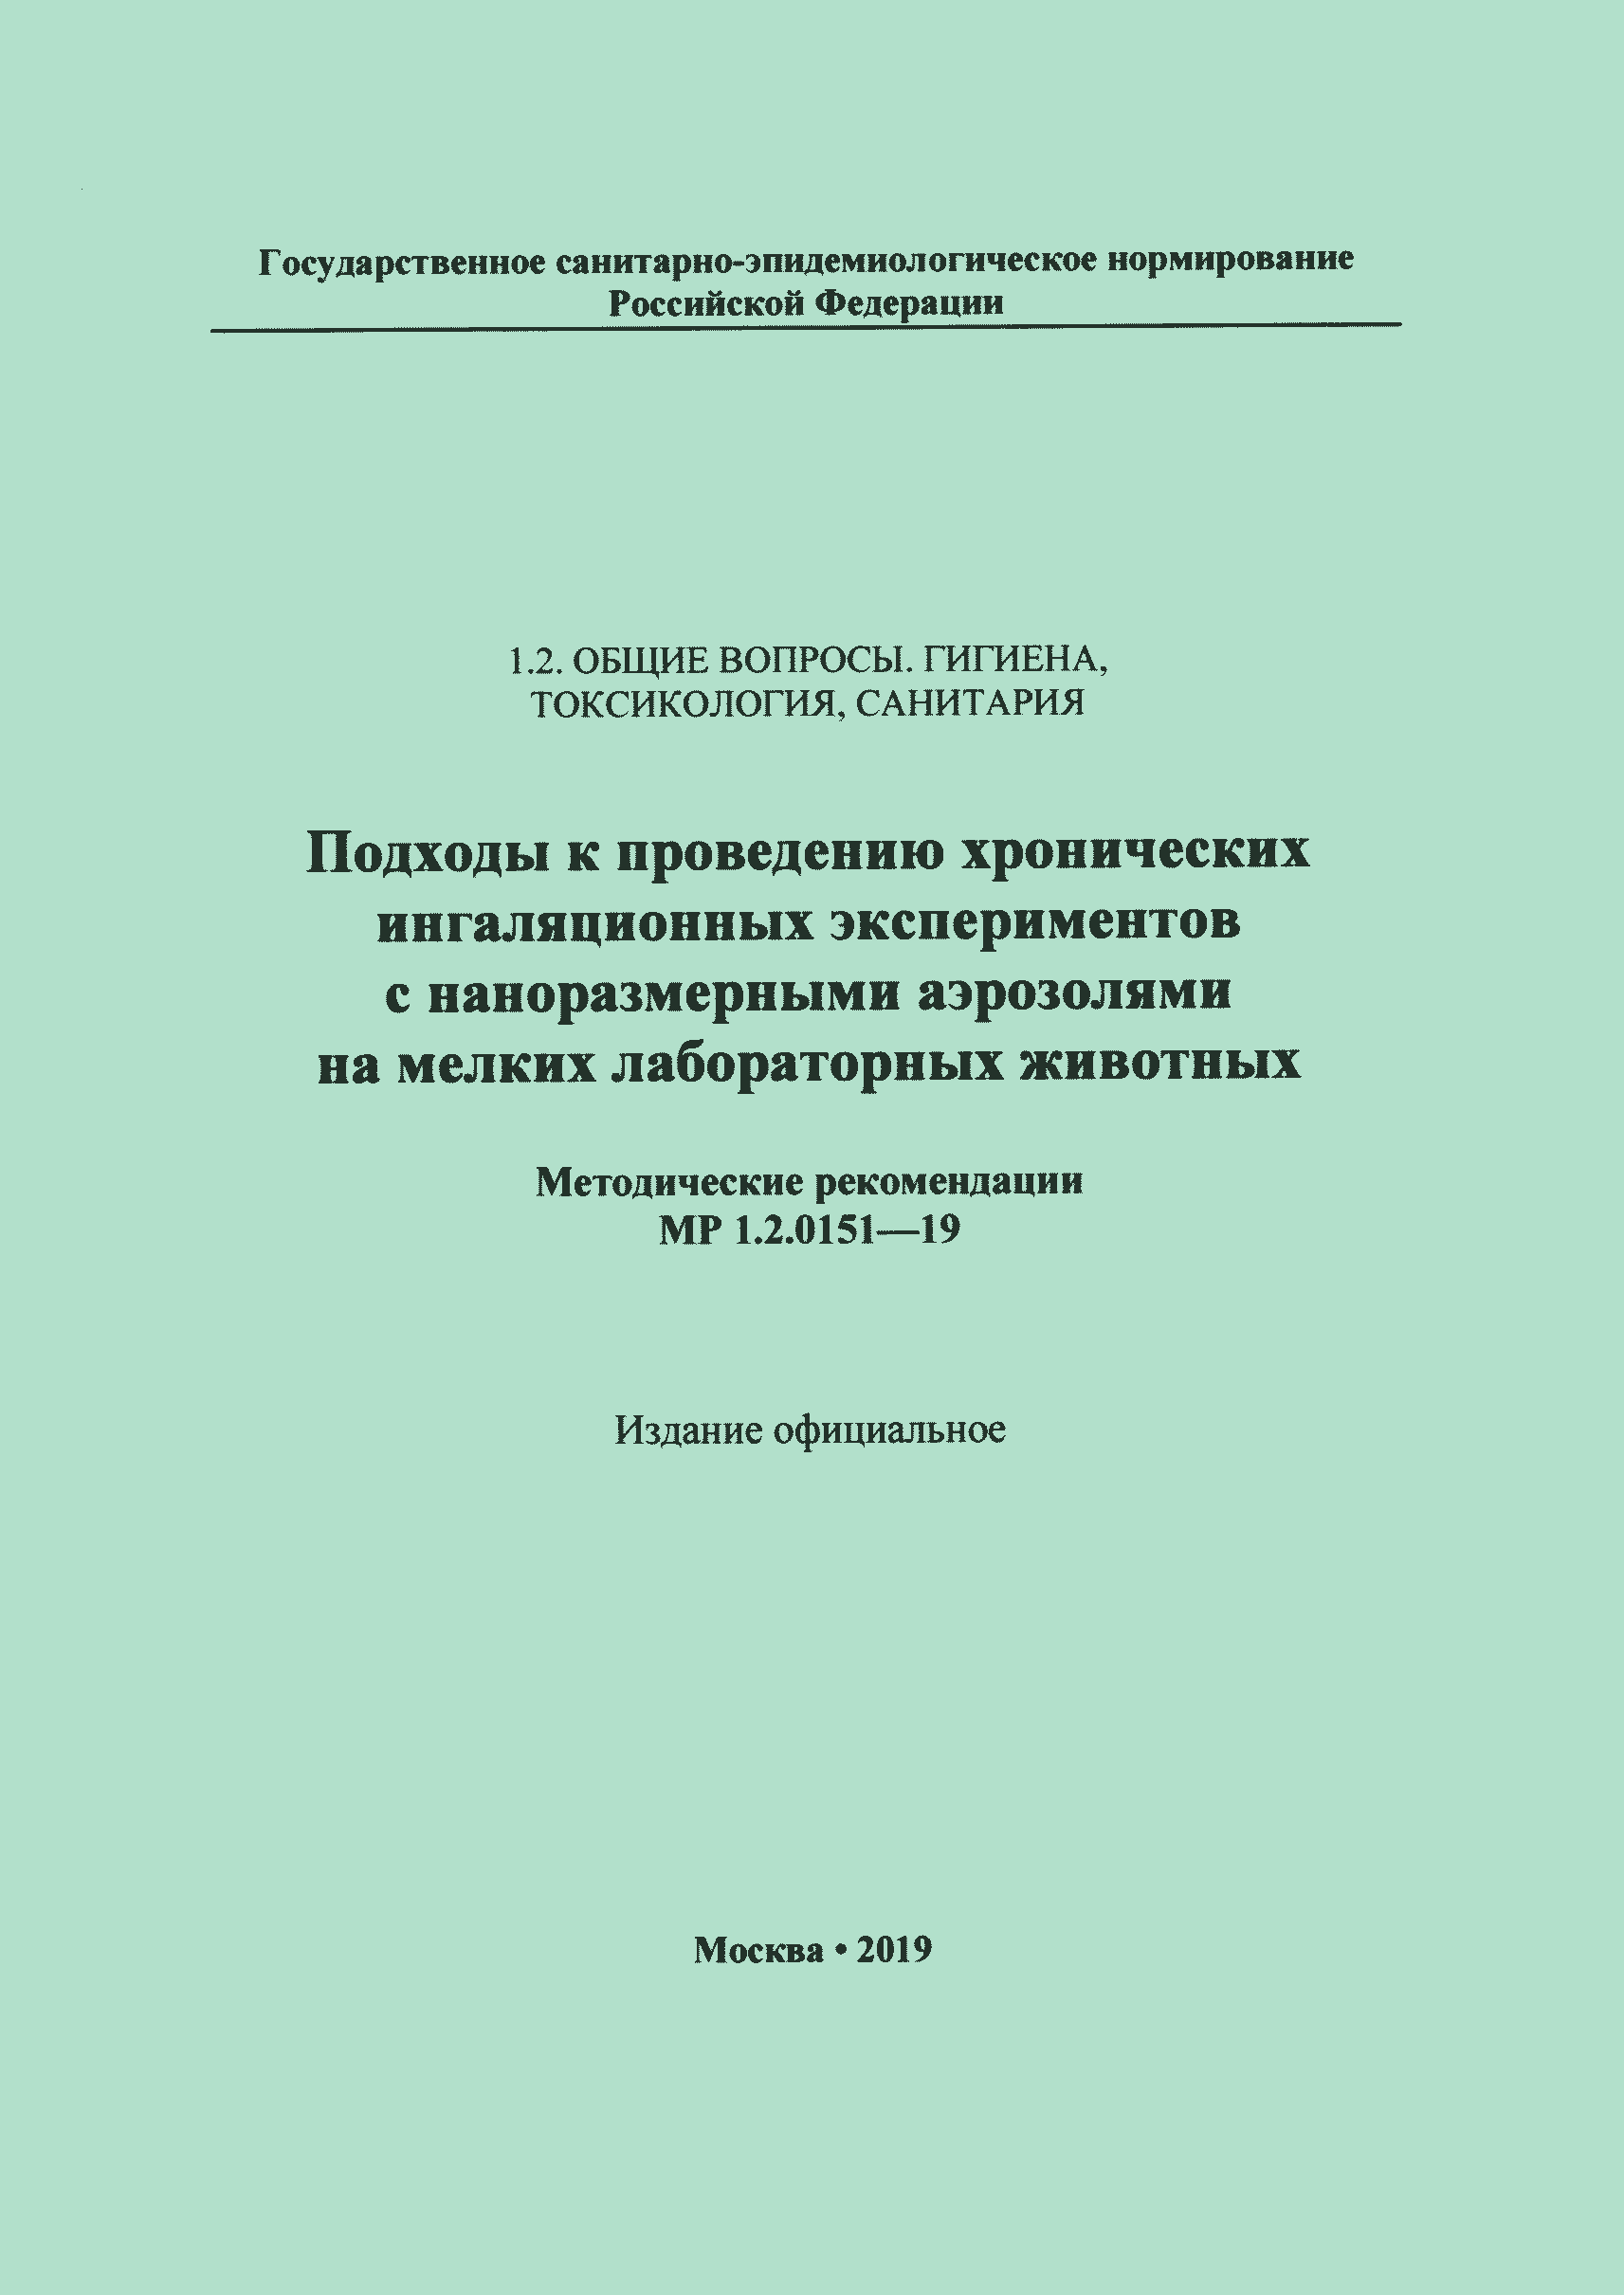 МР 1.2.0151-19